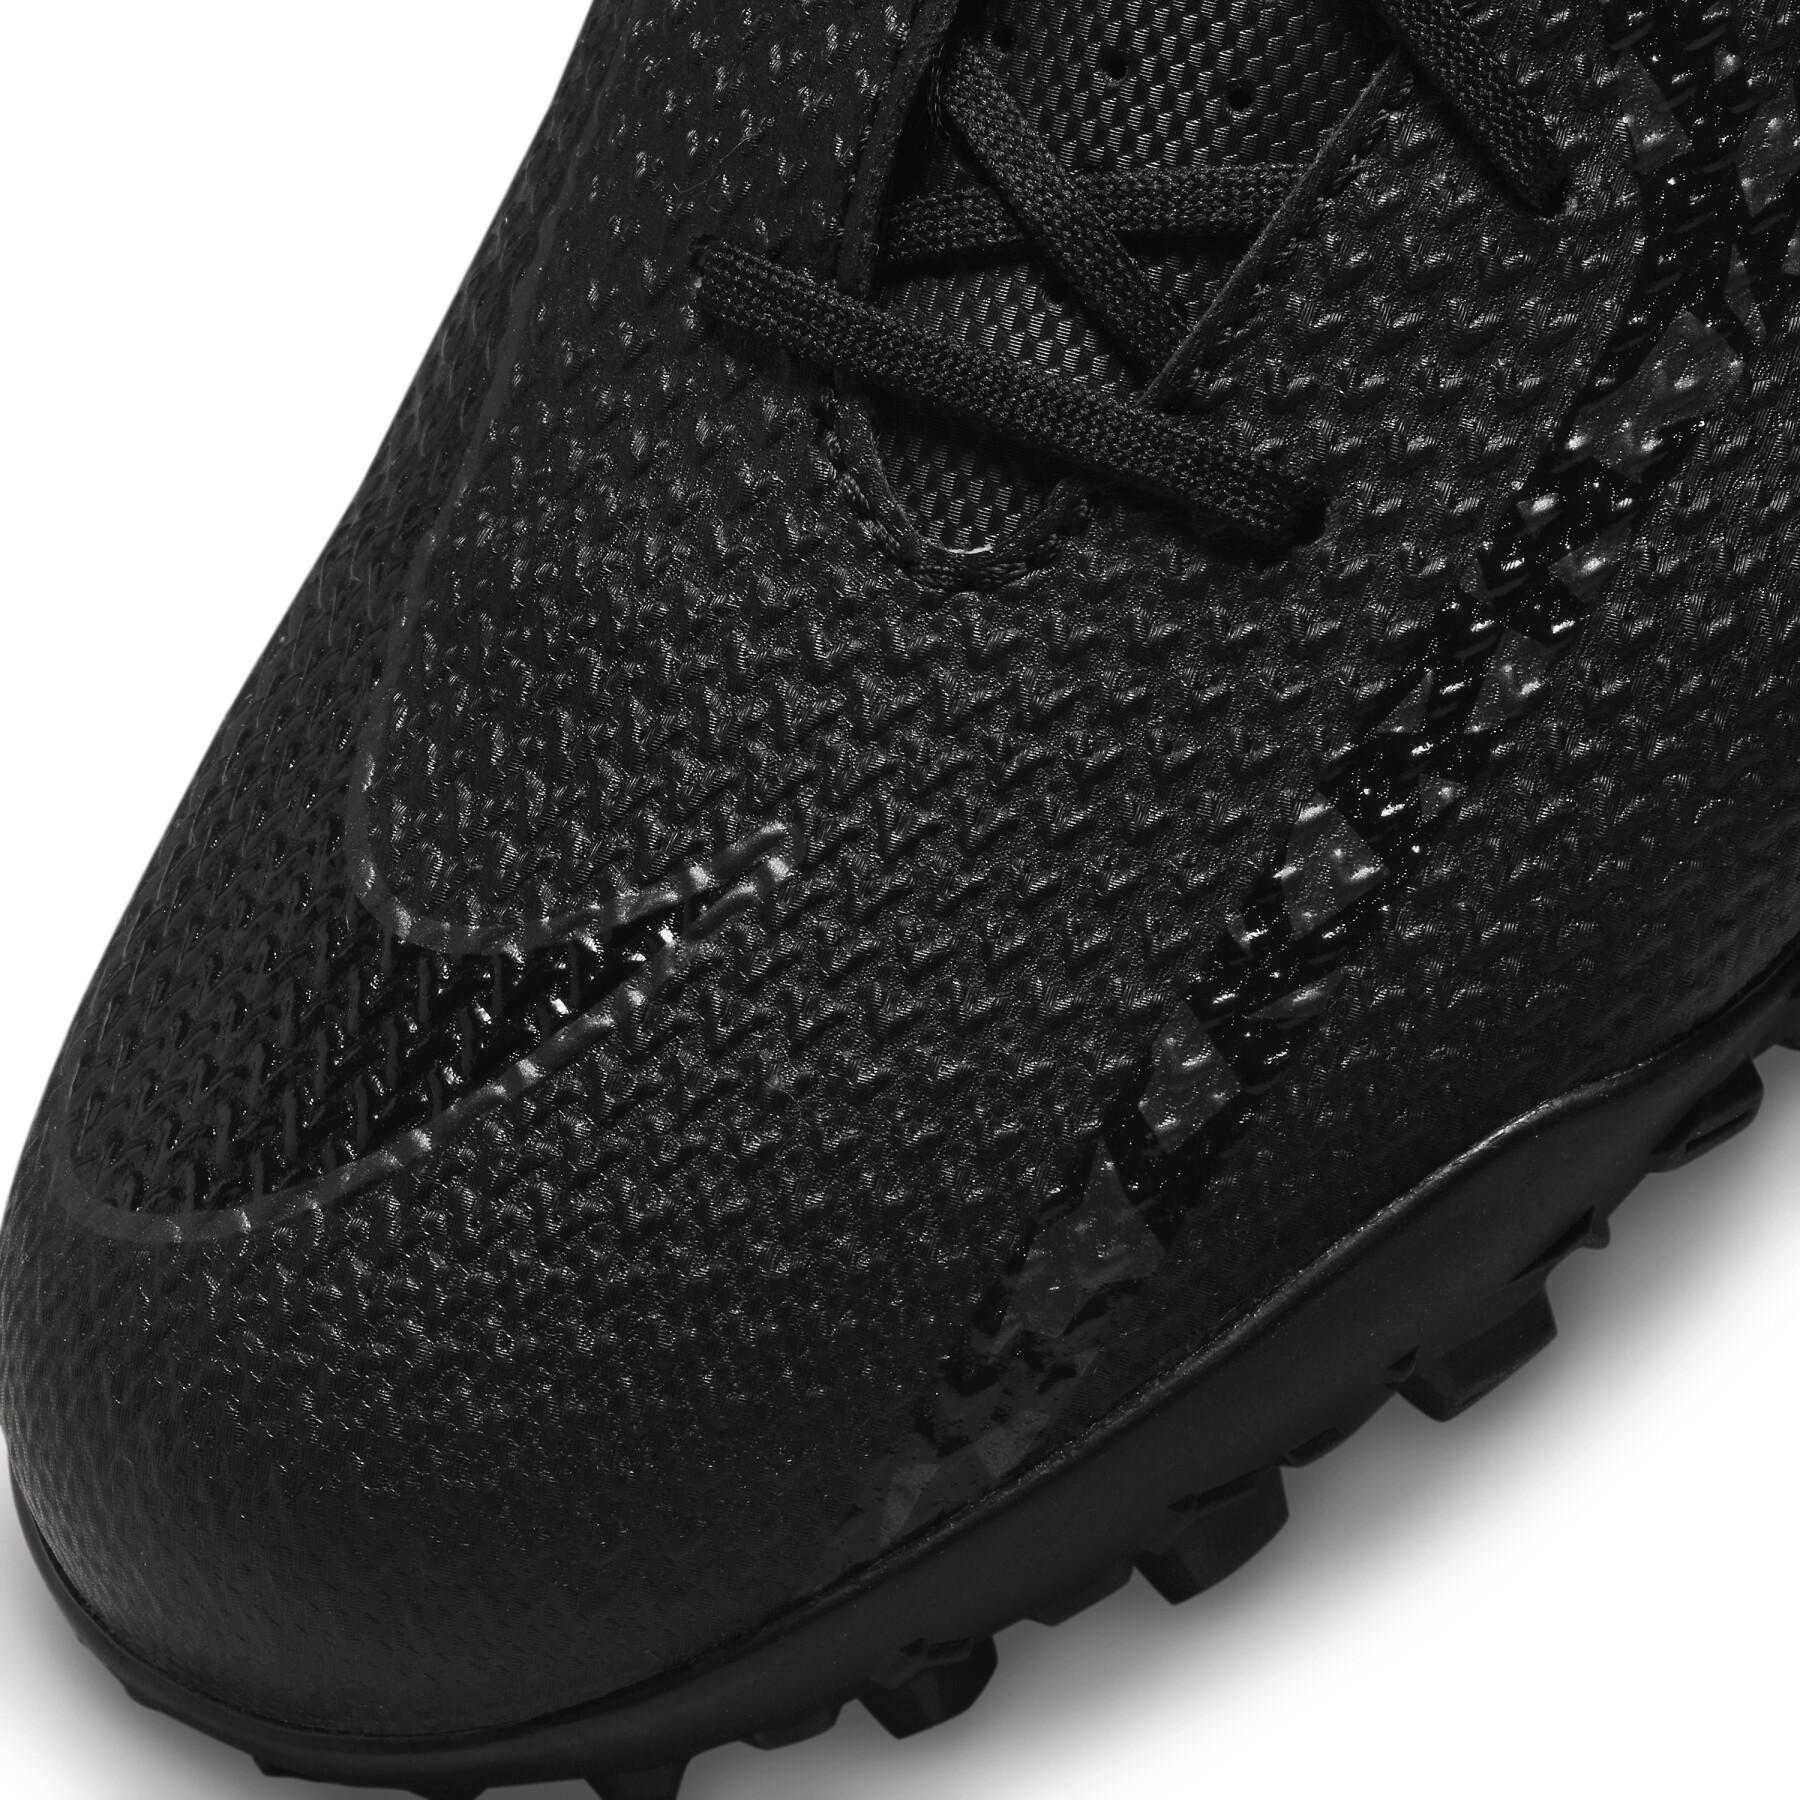 Chaussures de football Nike Phantom GT2 Club TF - Shadow Black Pack